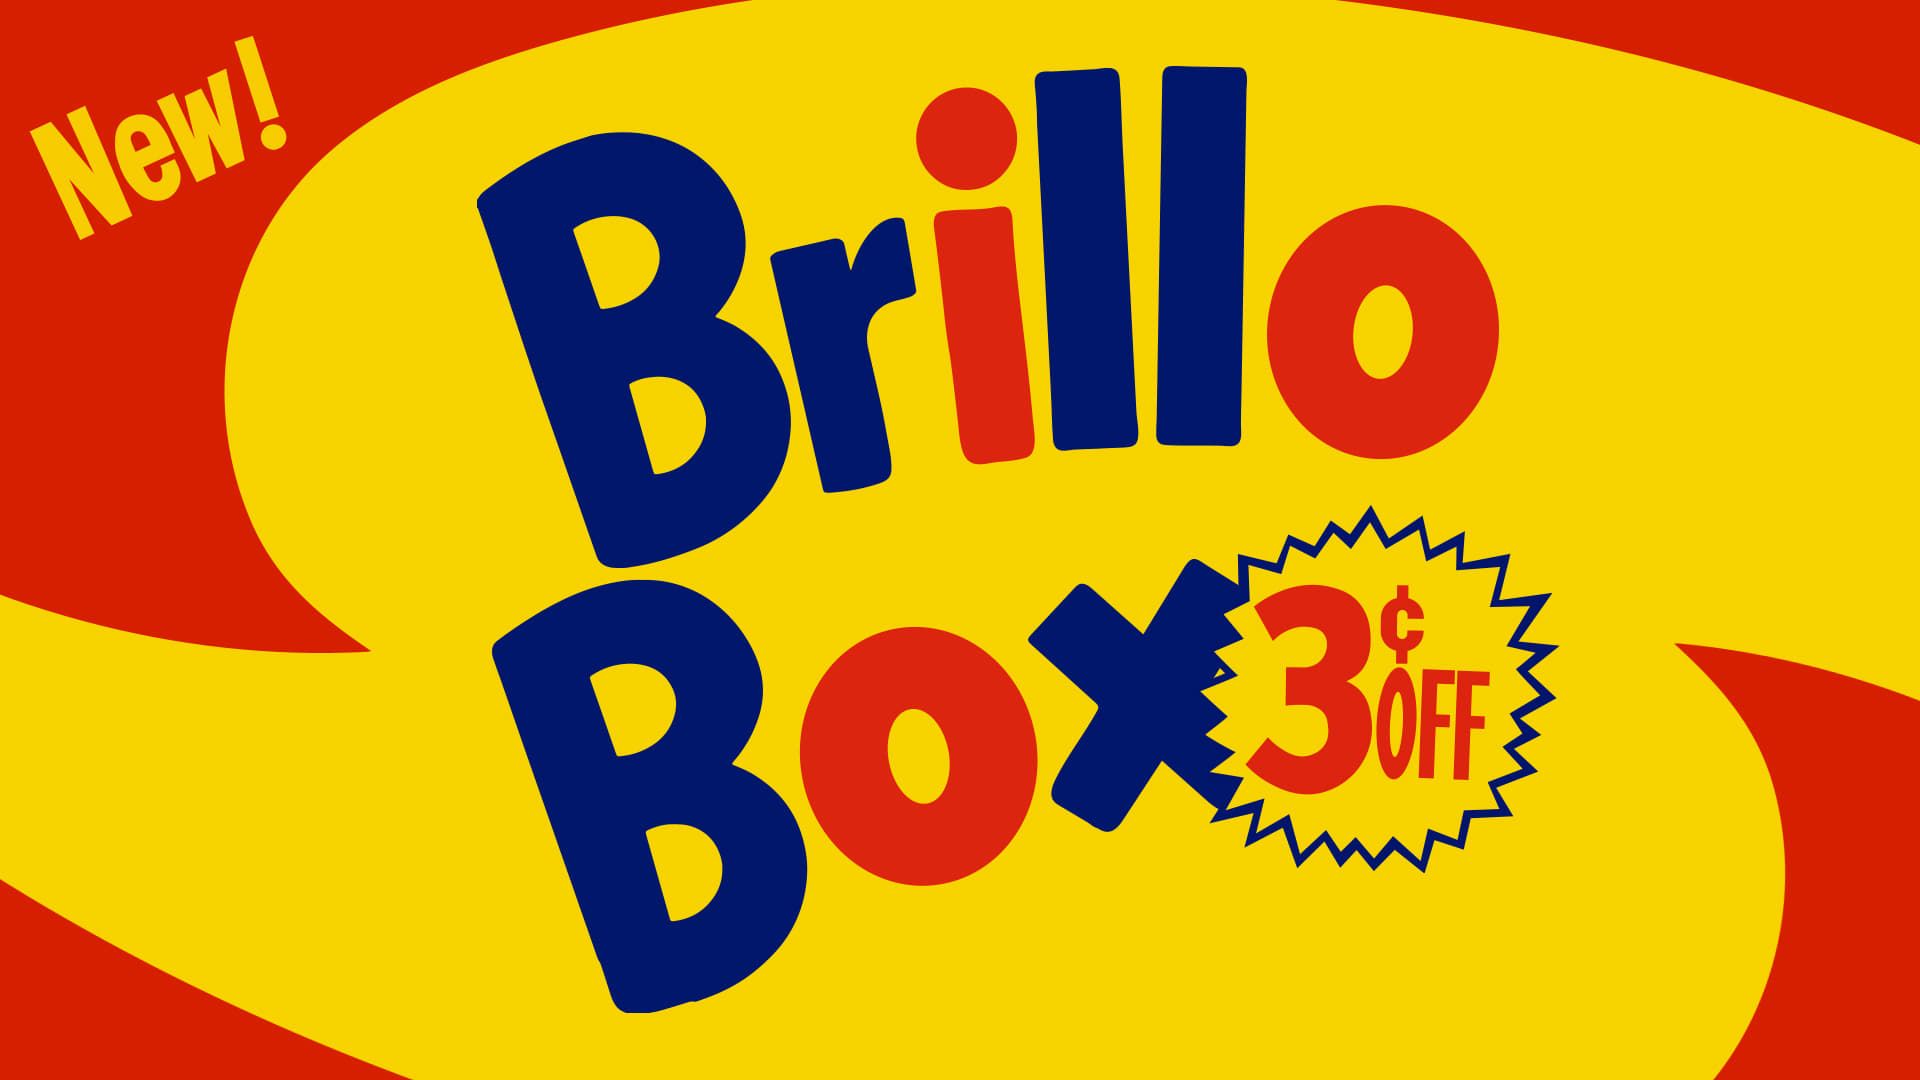 Cubierta de Brillo Box (3 ¢ off)